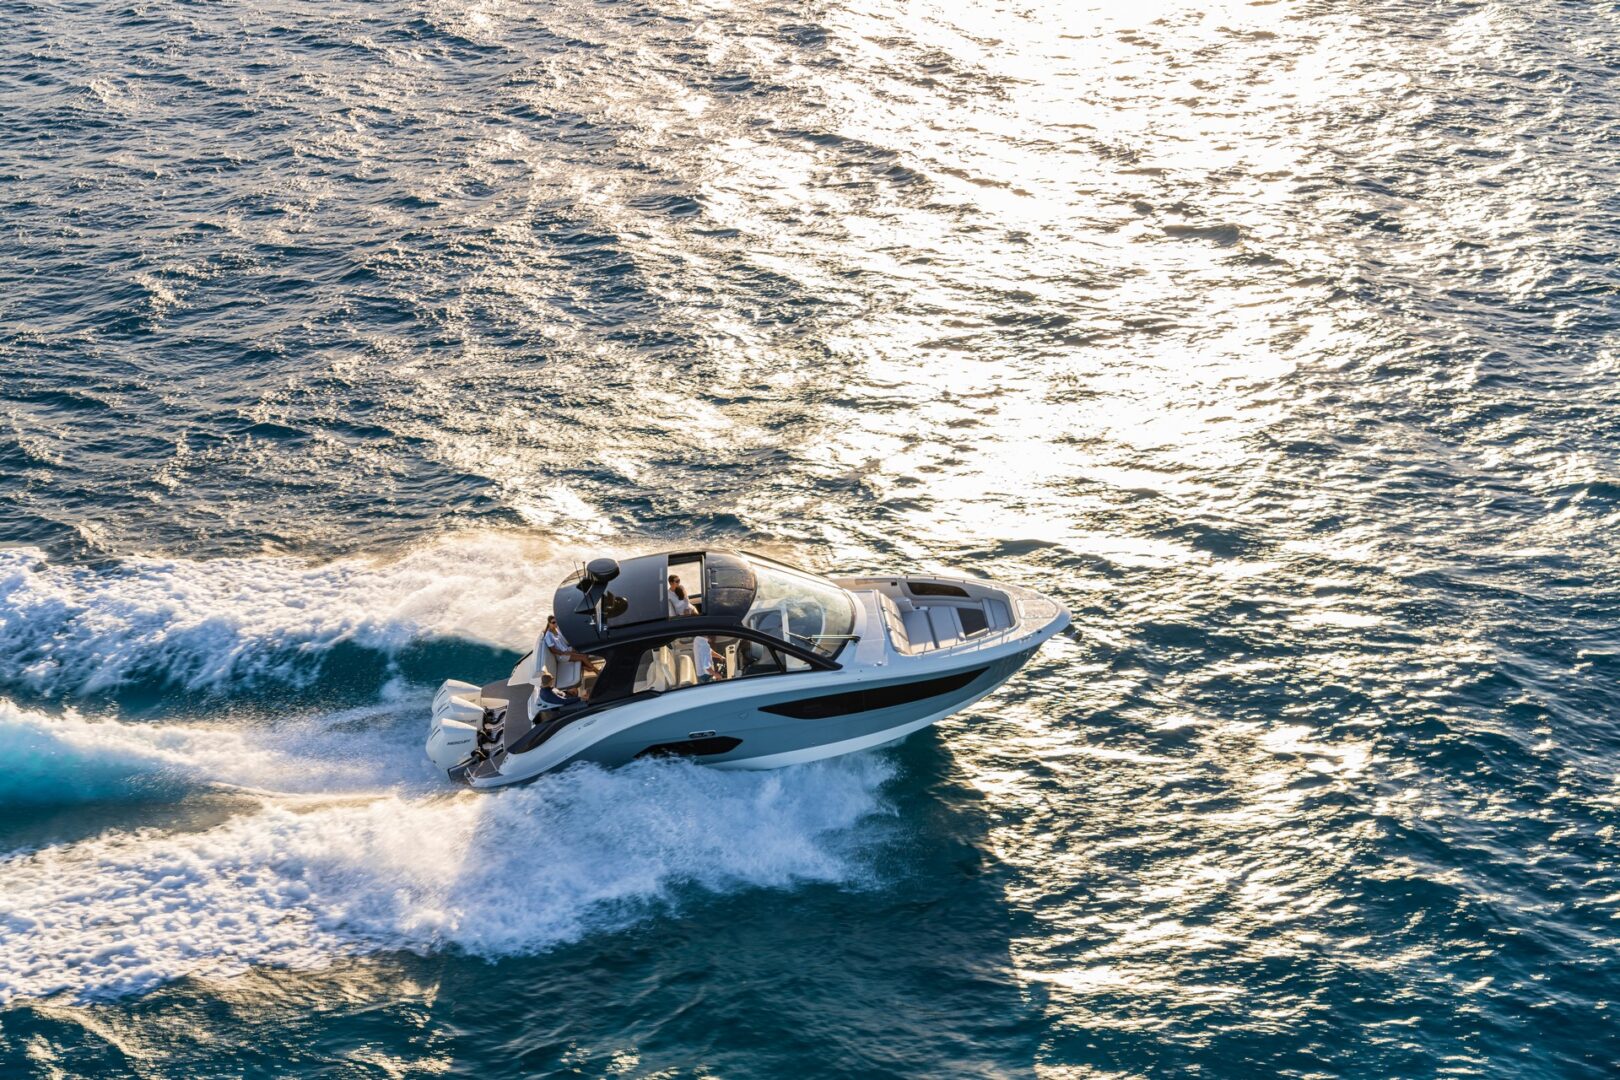 بي ام دبليو تكشف عن قارب "سان دانسر 370 أوتبورد" 2021 الفاخر 71